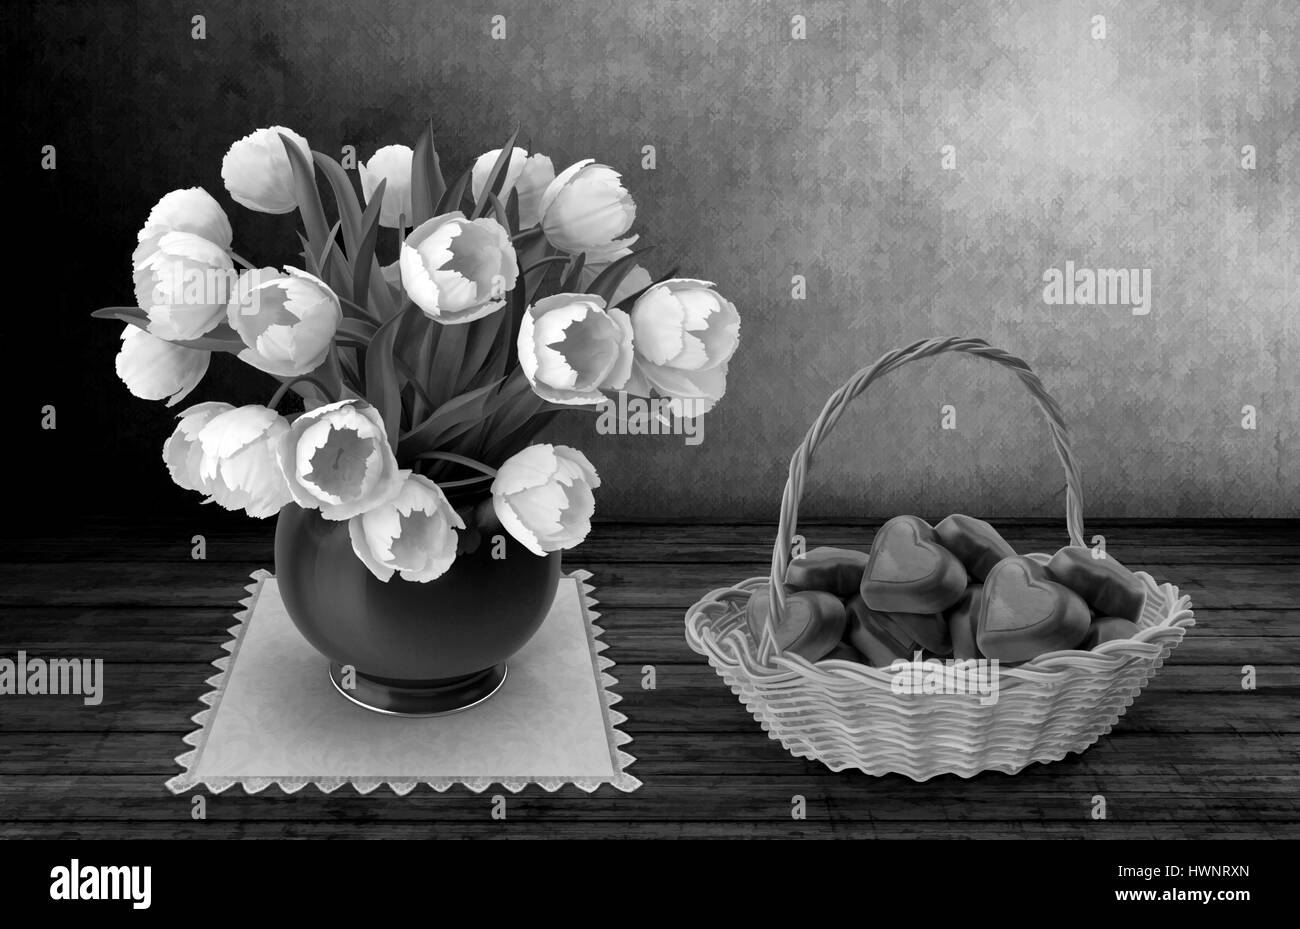 Still Life : sur la surface de la table en bois se dresse sur une serviette de table vase en céramique avec tulipes blanches, debout près d'un panier en osier de bonbons. 3D render Banque D'Images